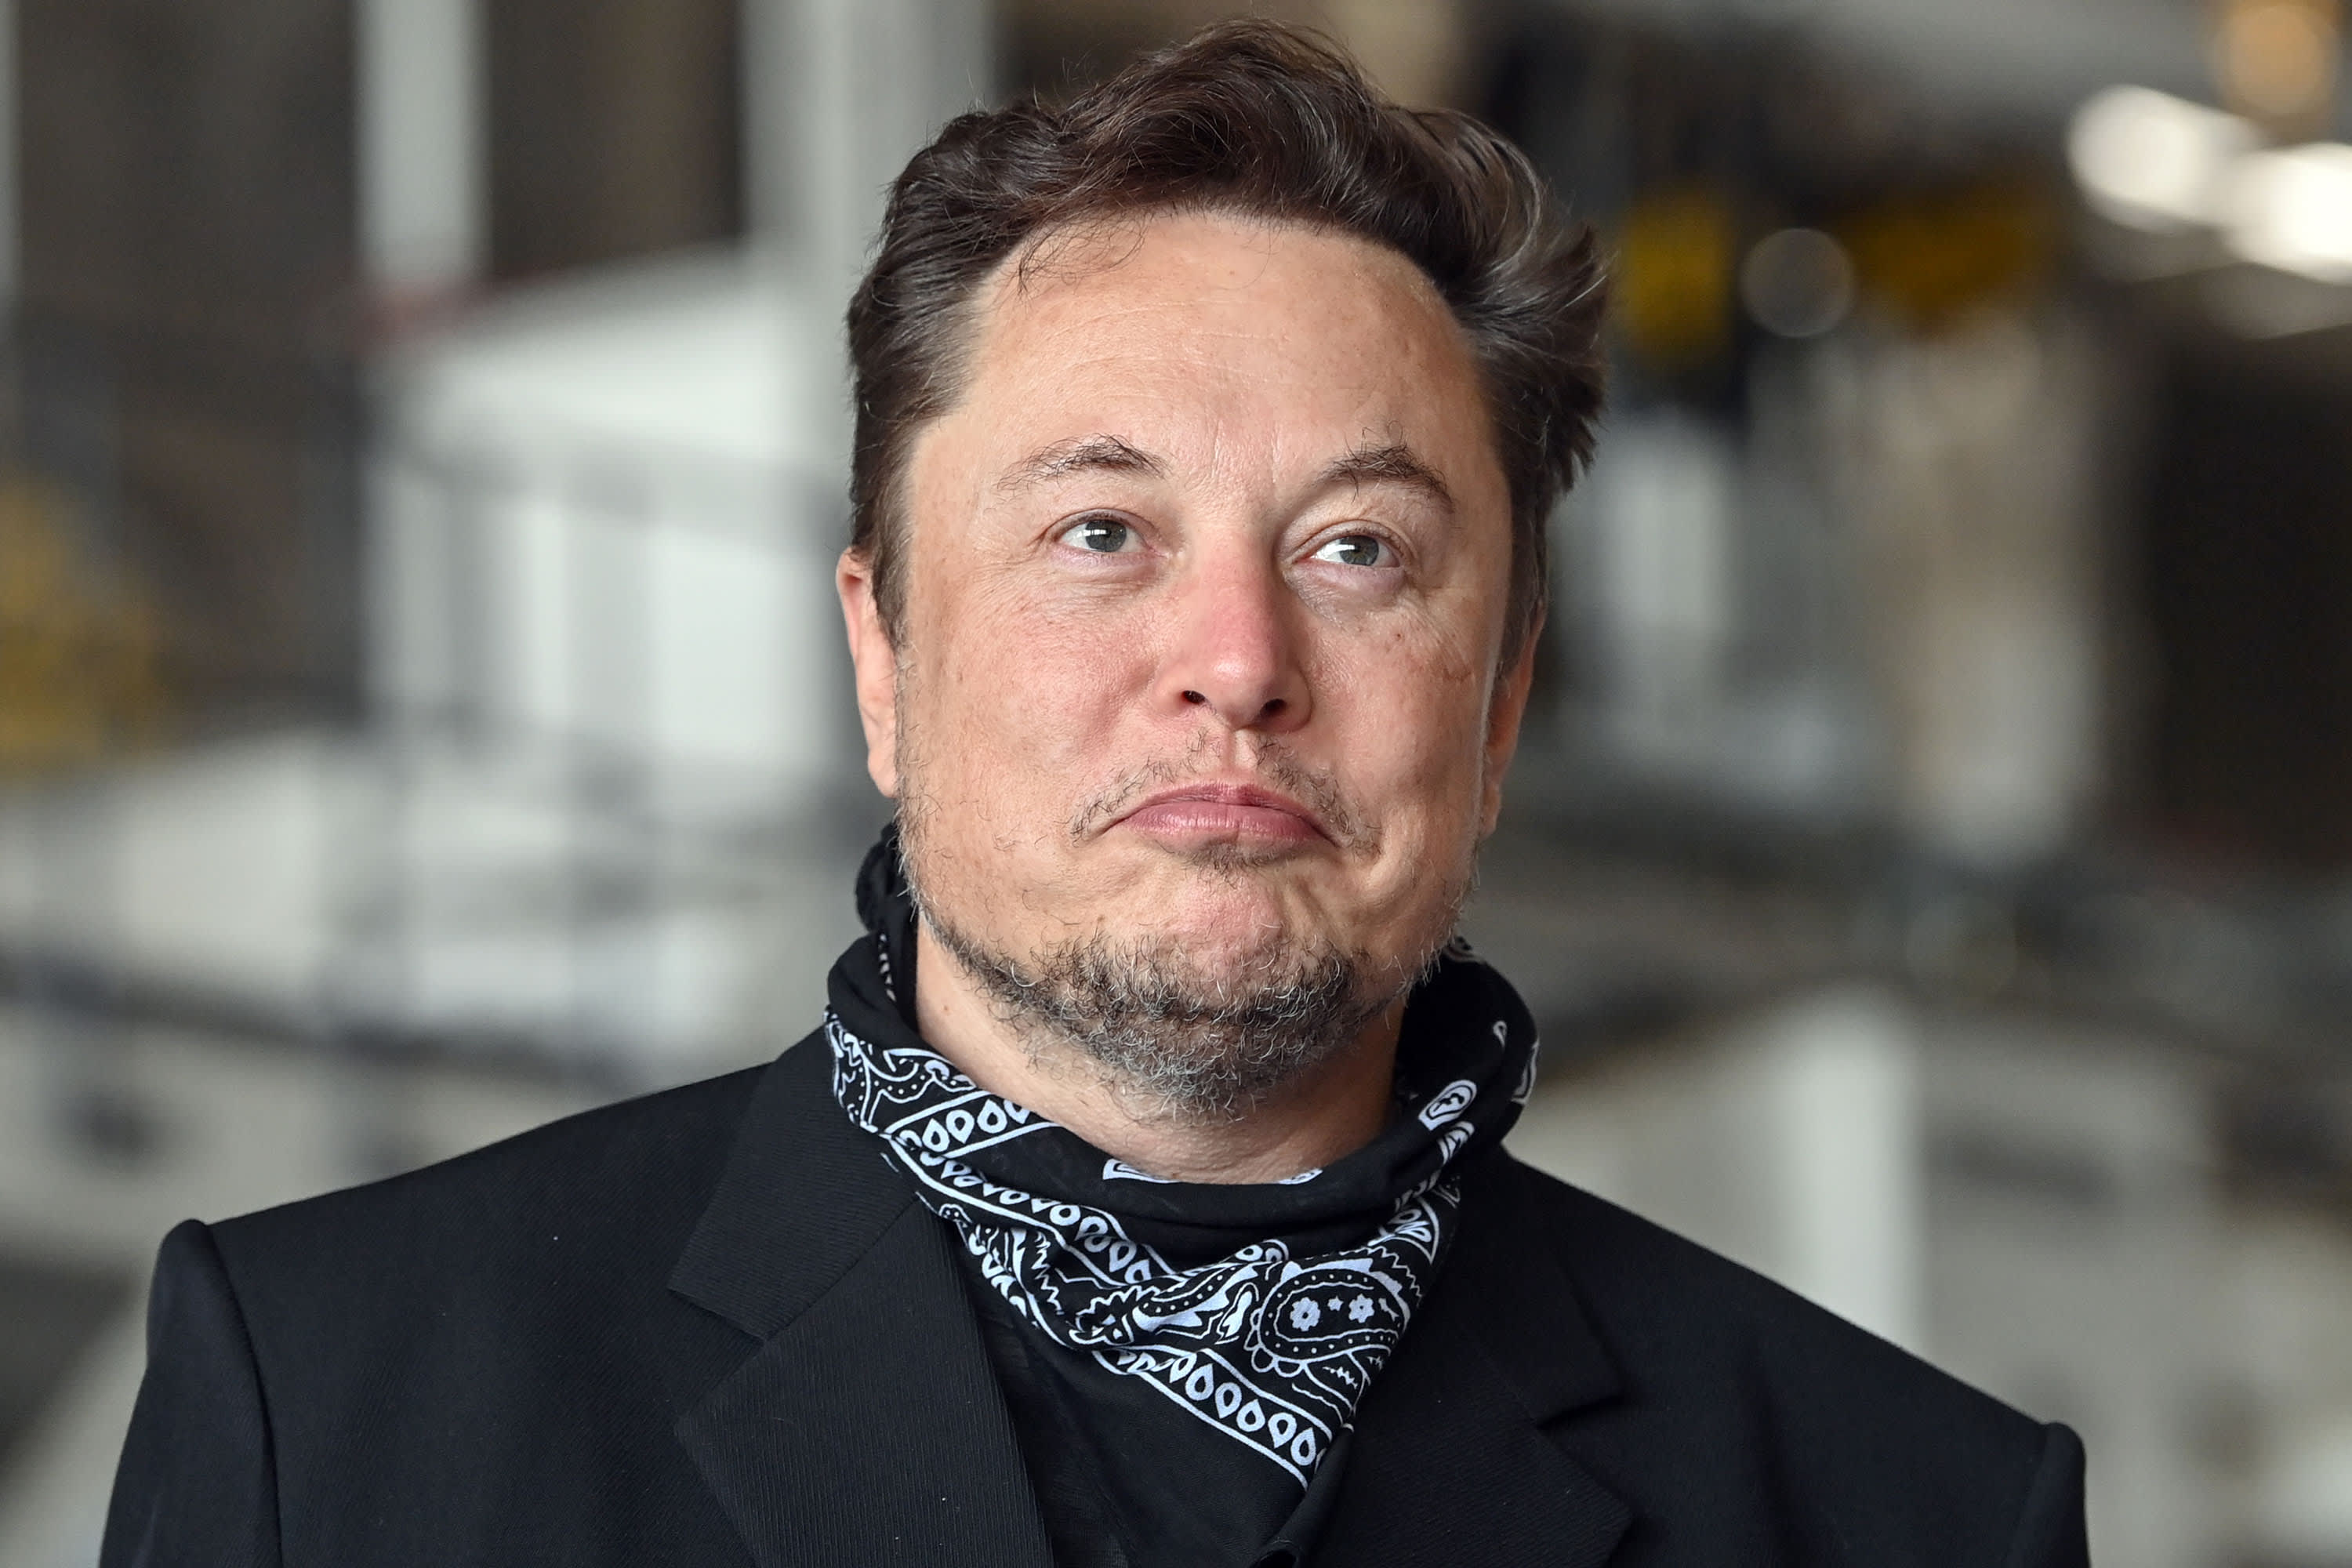 Elon Musk sells around $5 billion of Tesla stock